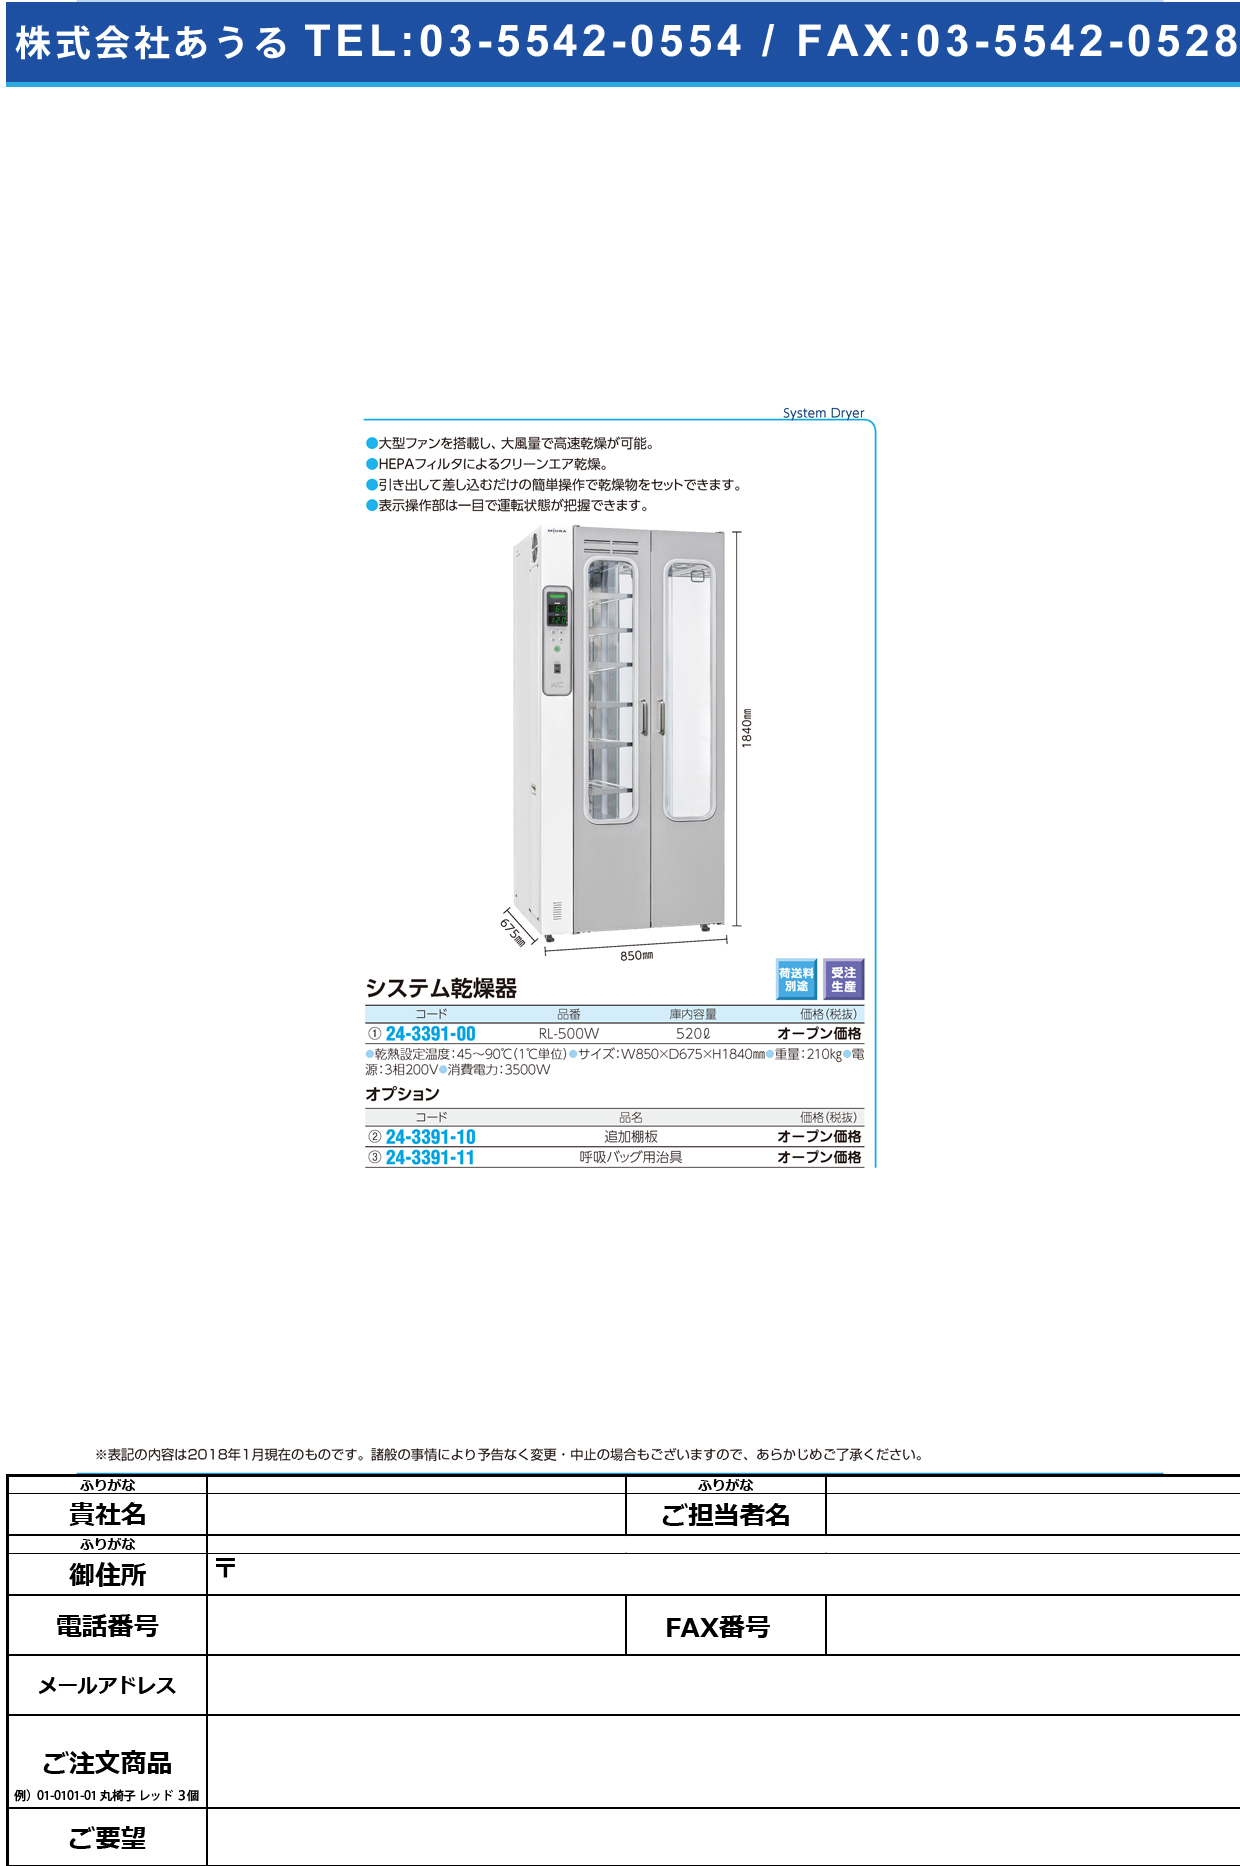 (24-3391-00)システム乾燥器 RL-500W(520L) ｼｽﾃﾑｶﾝｿｳｷ【1台単位】【2019年カタログ商品】